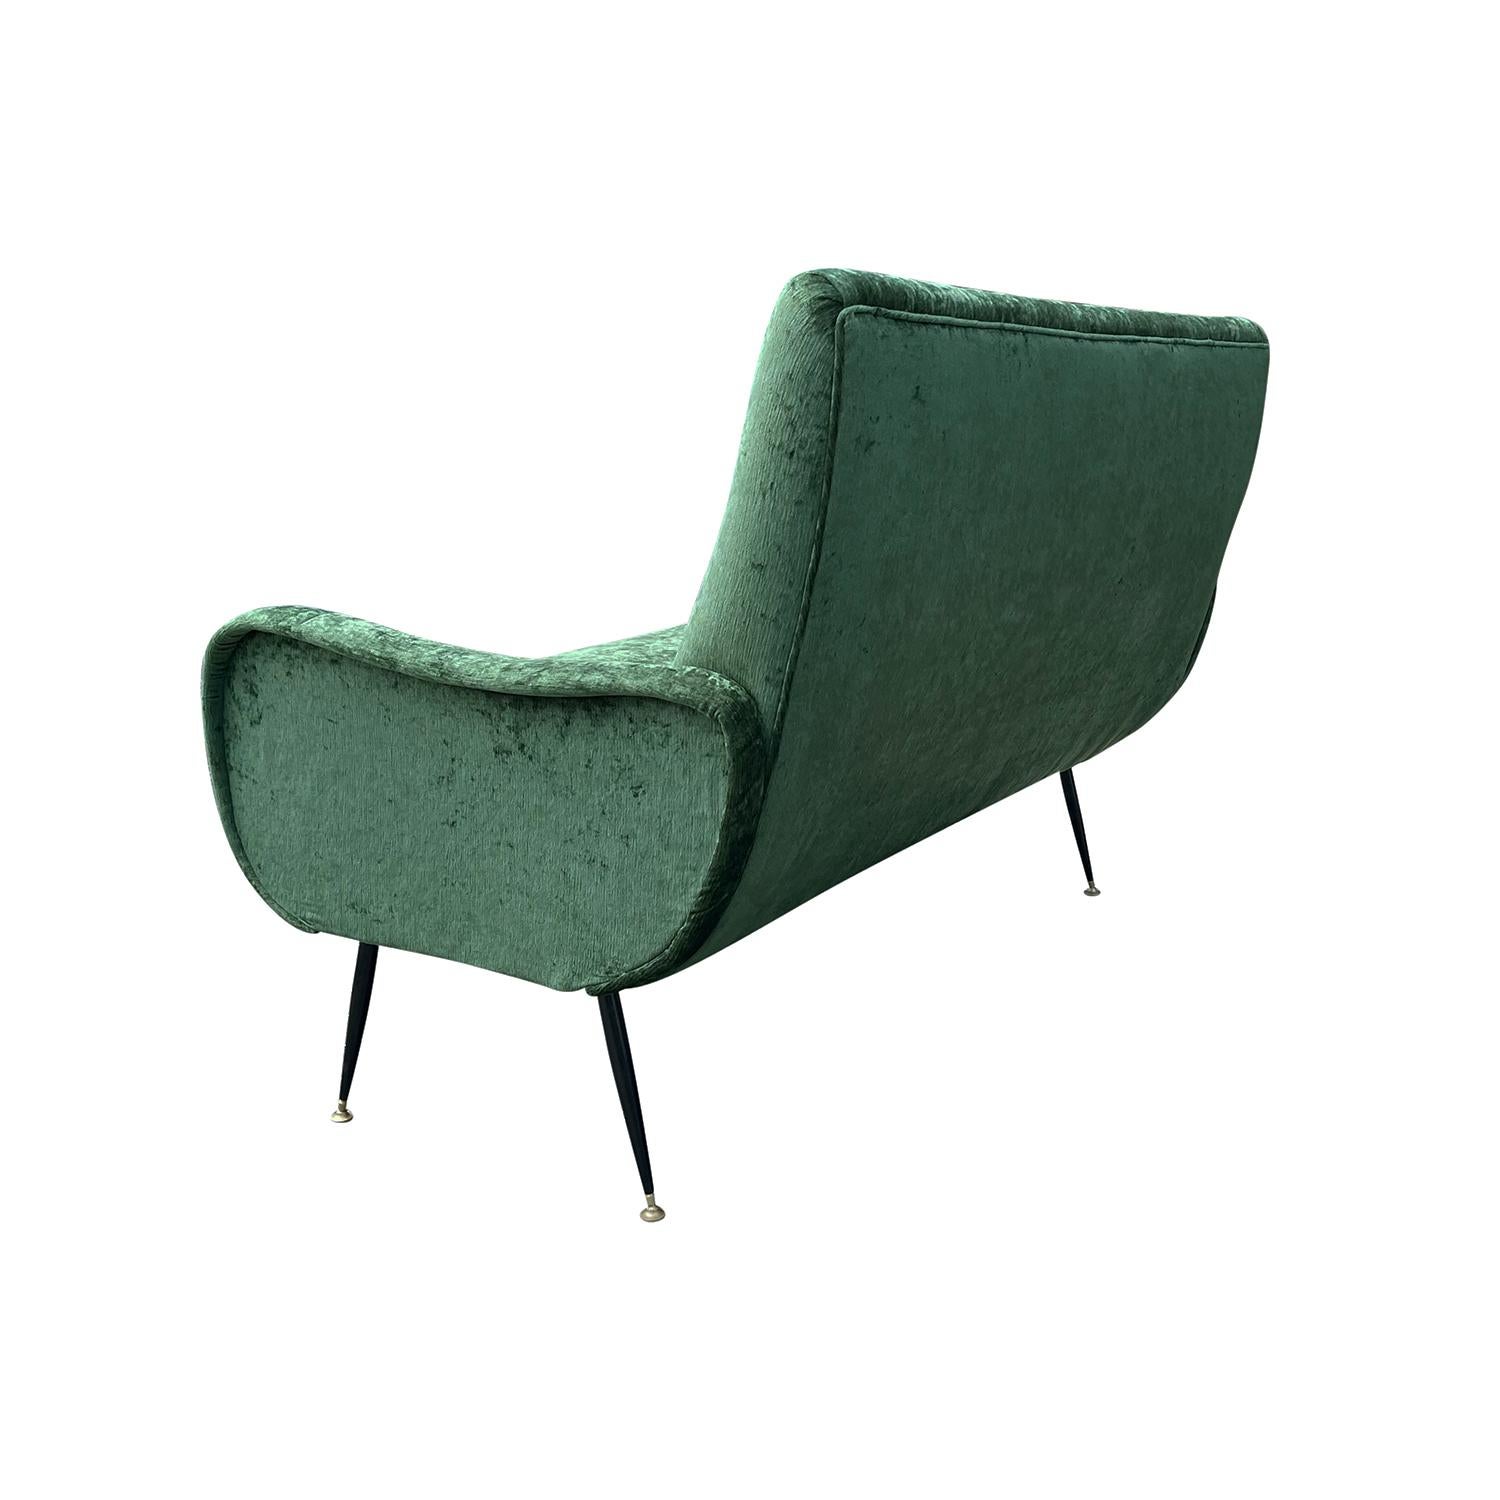 Grünes italienisches Zweisitzer-Sofa des 20. Jahrhunderts, eisen, von Marco Zanuso (Handgefertigt)